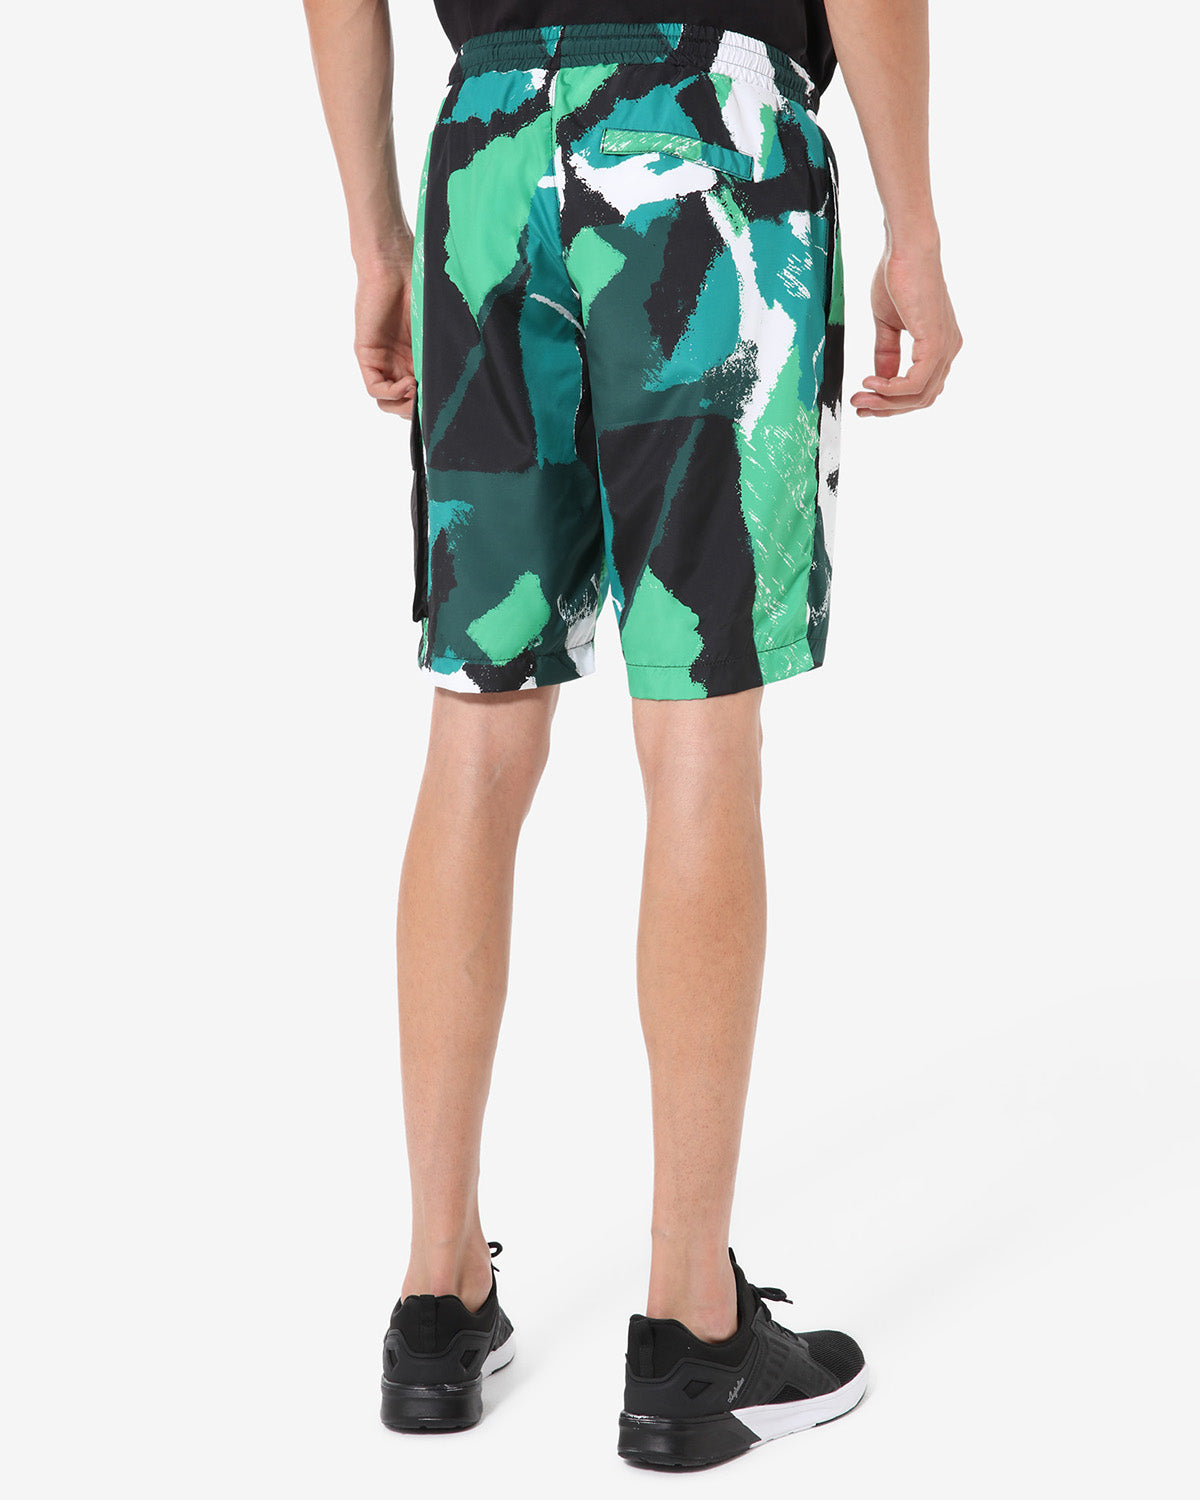 Camo Jungle Smash Short: Australian Sportswear